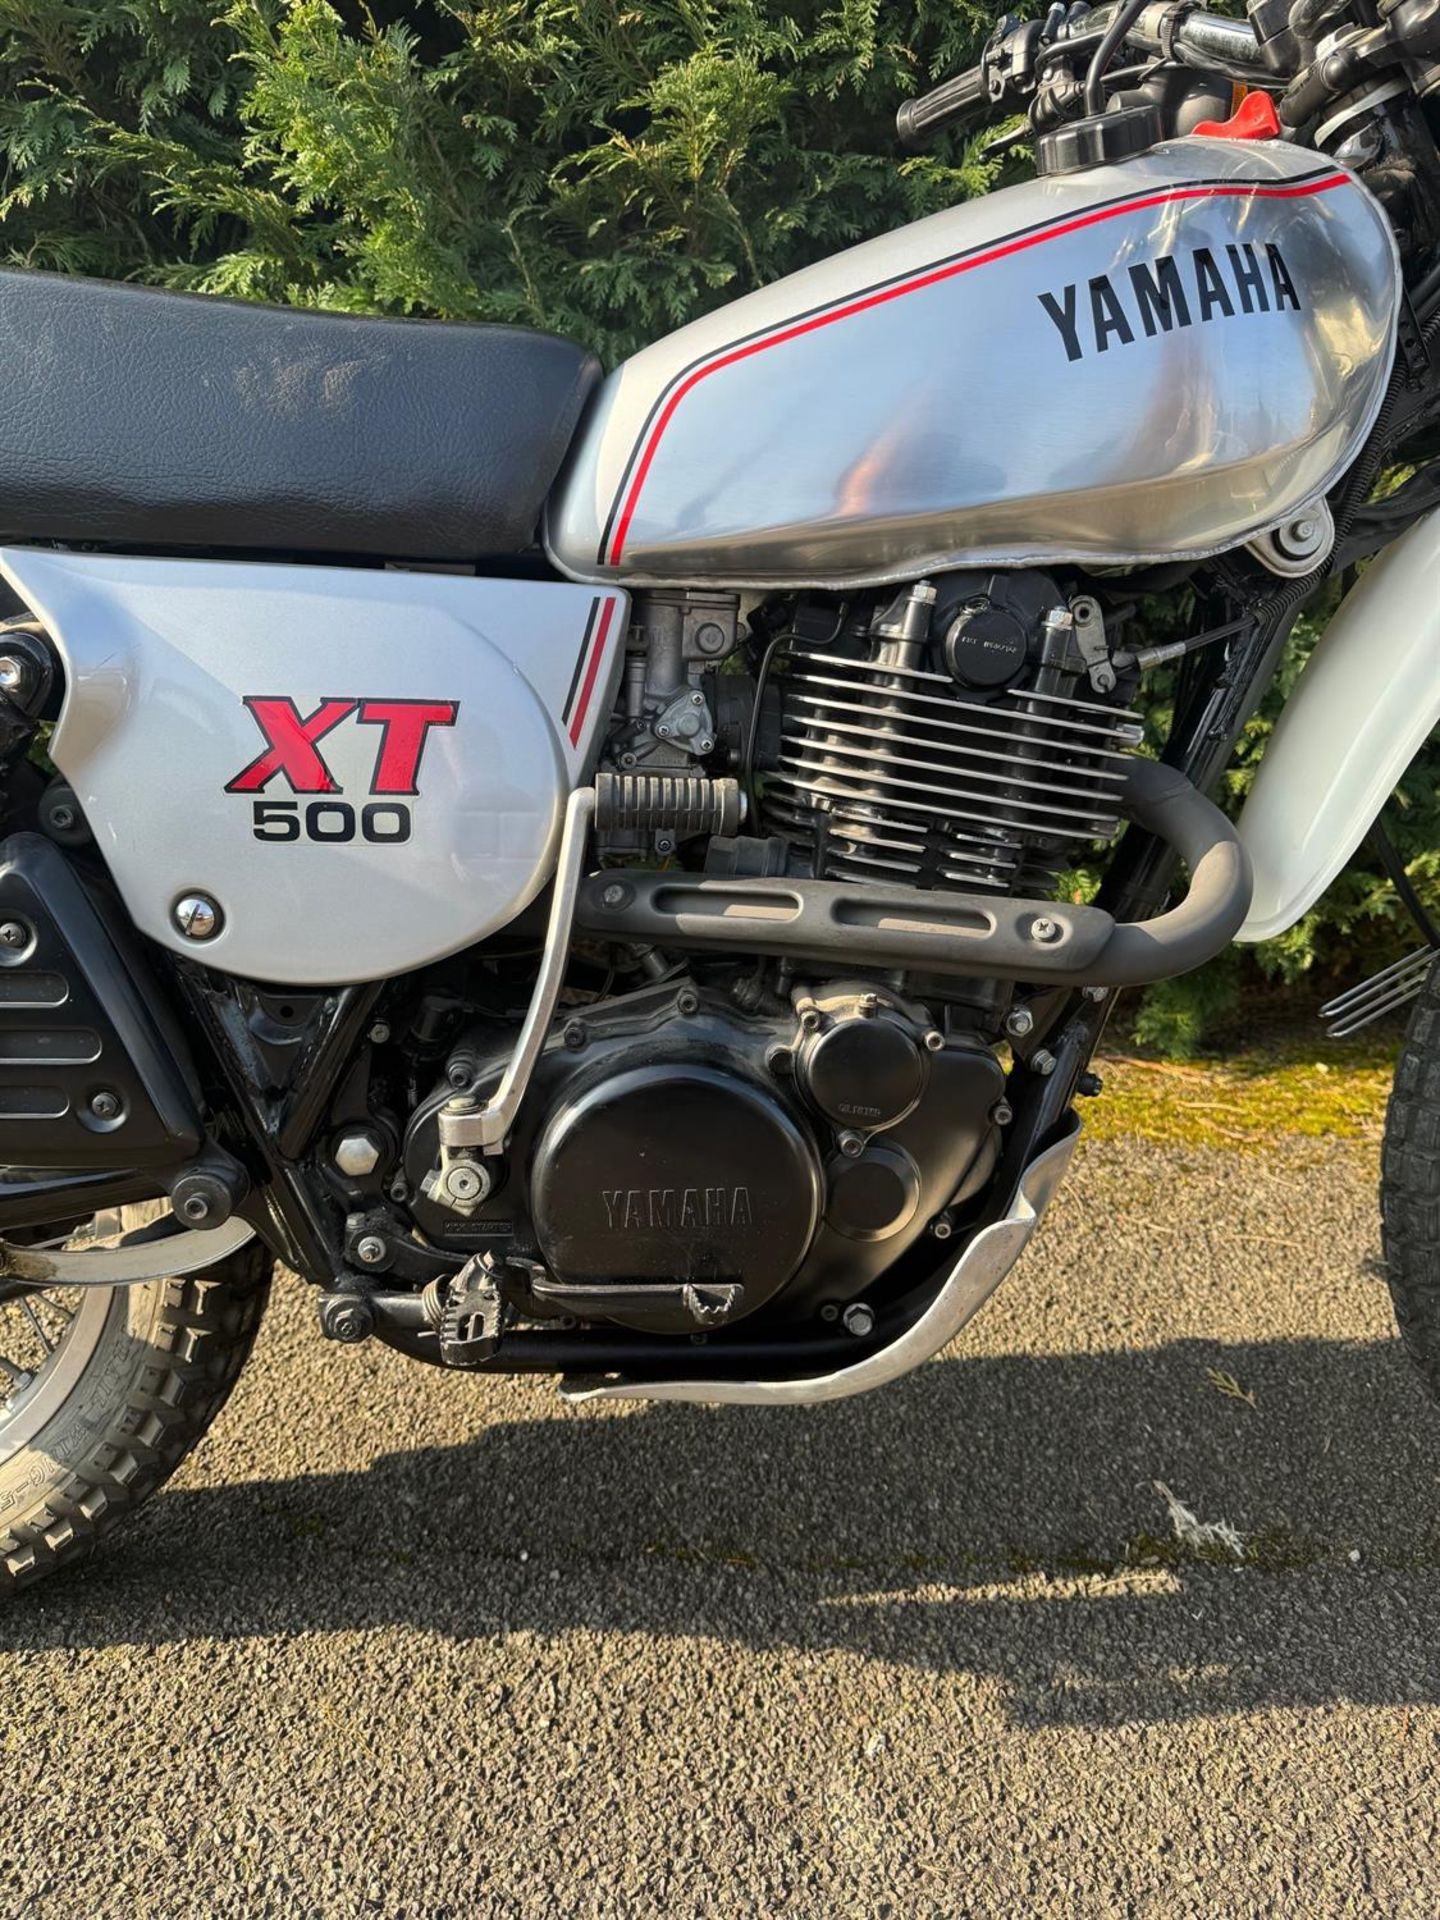 1981 Yamaha XT500 499cc - Image 6 of 10